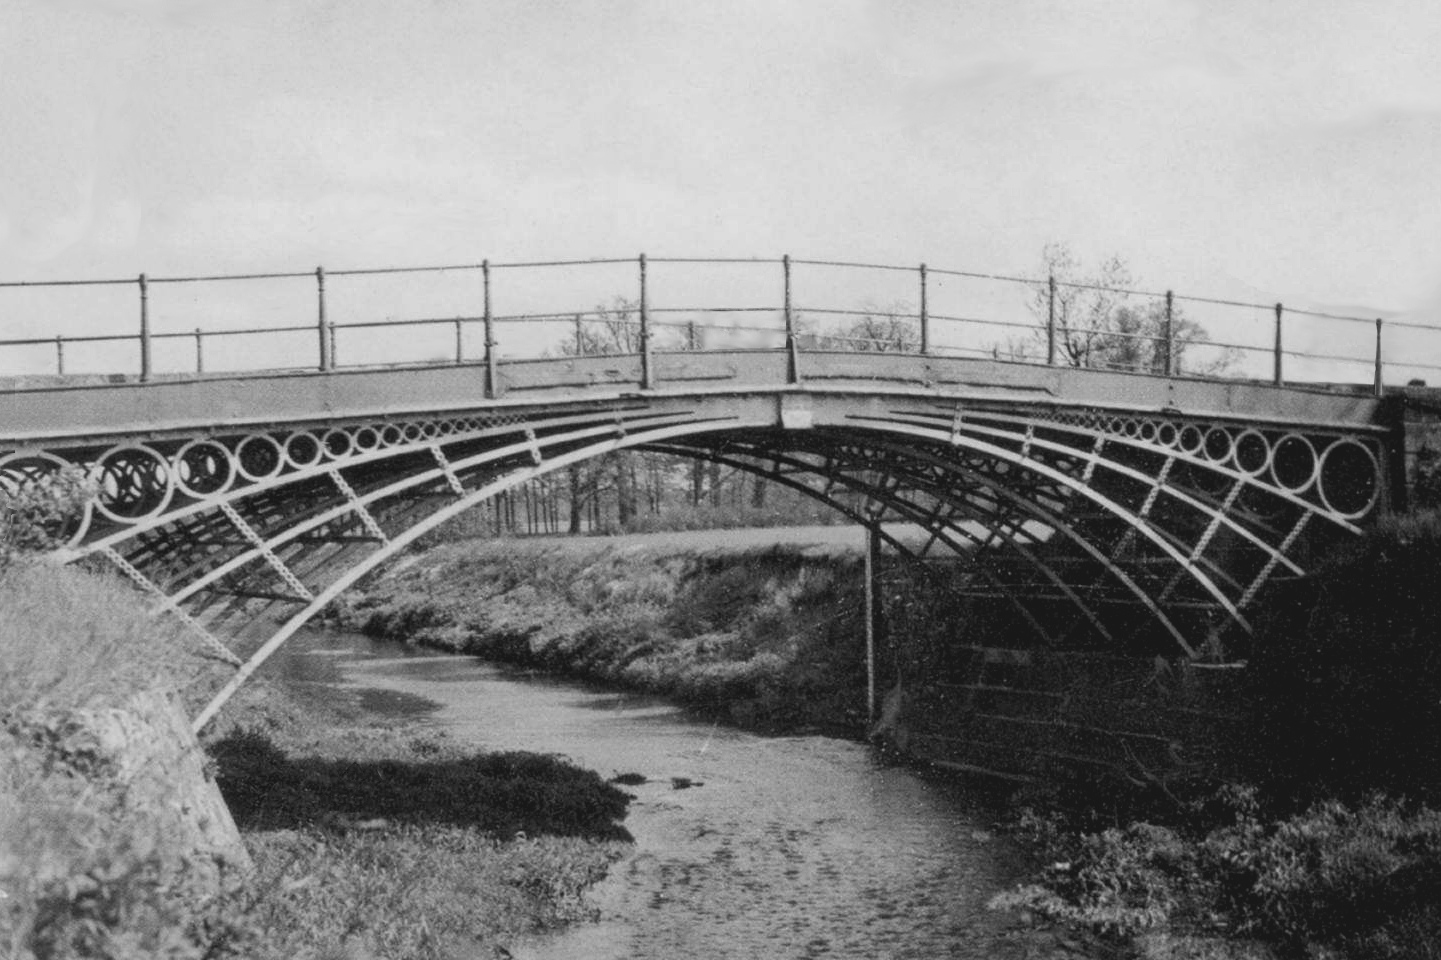 zelazny most przed1945 (7)